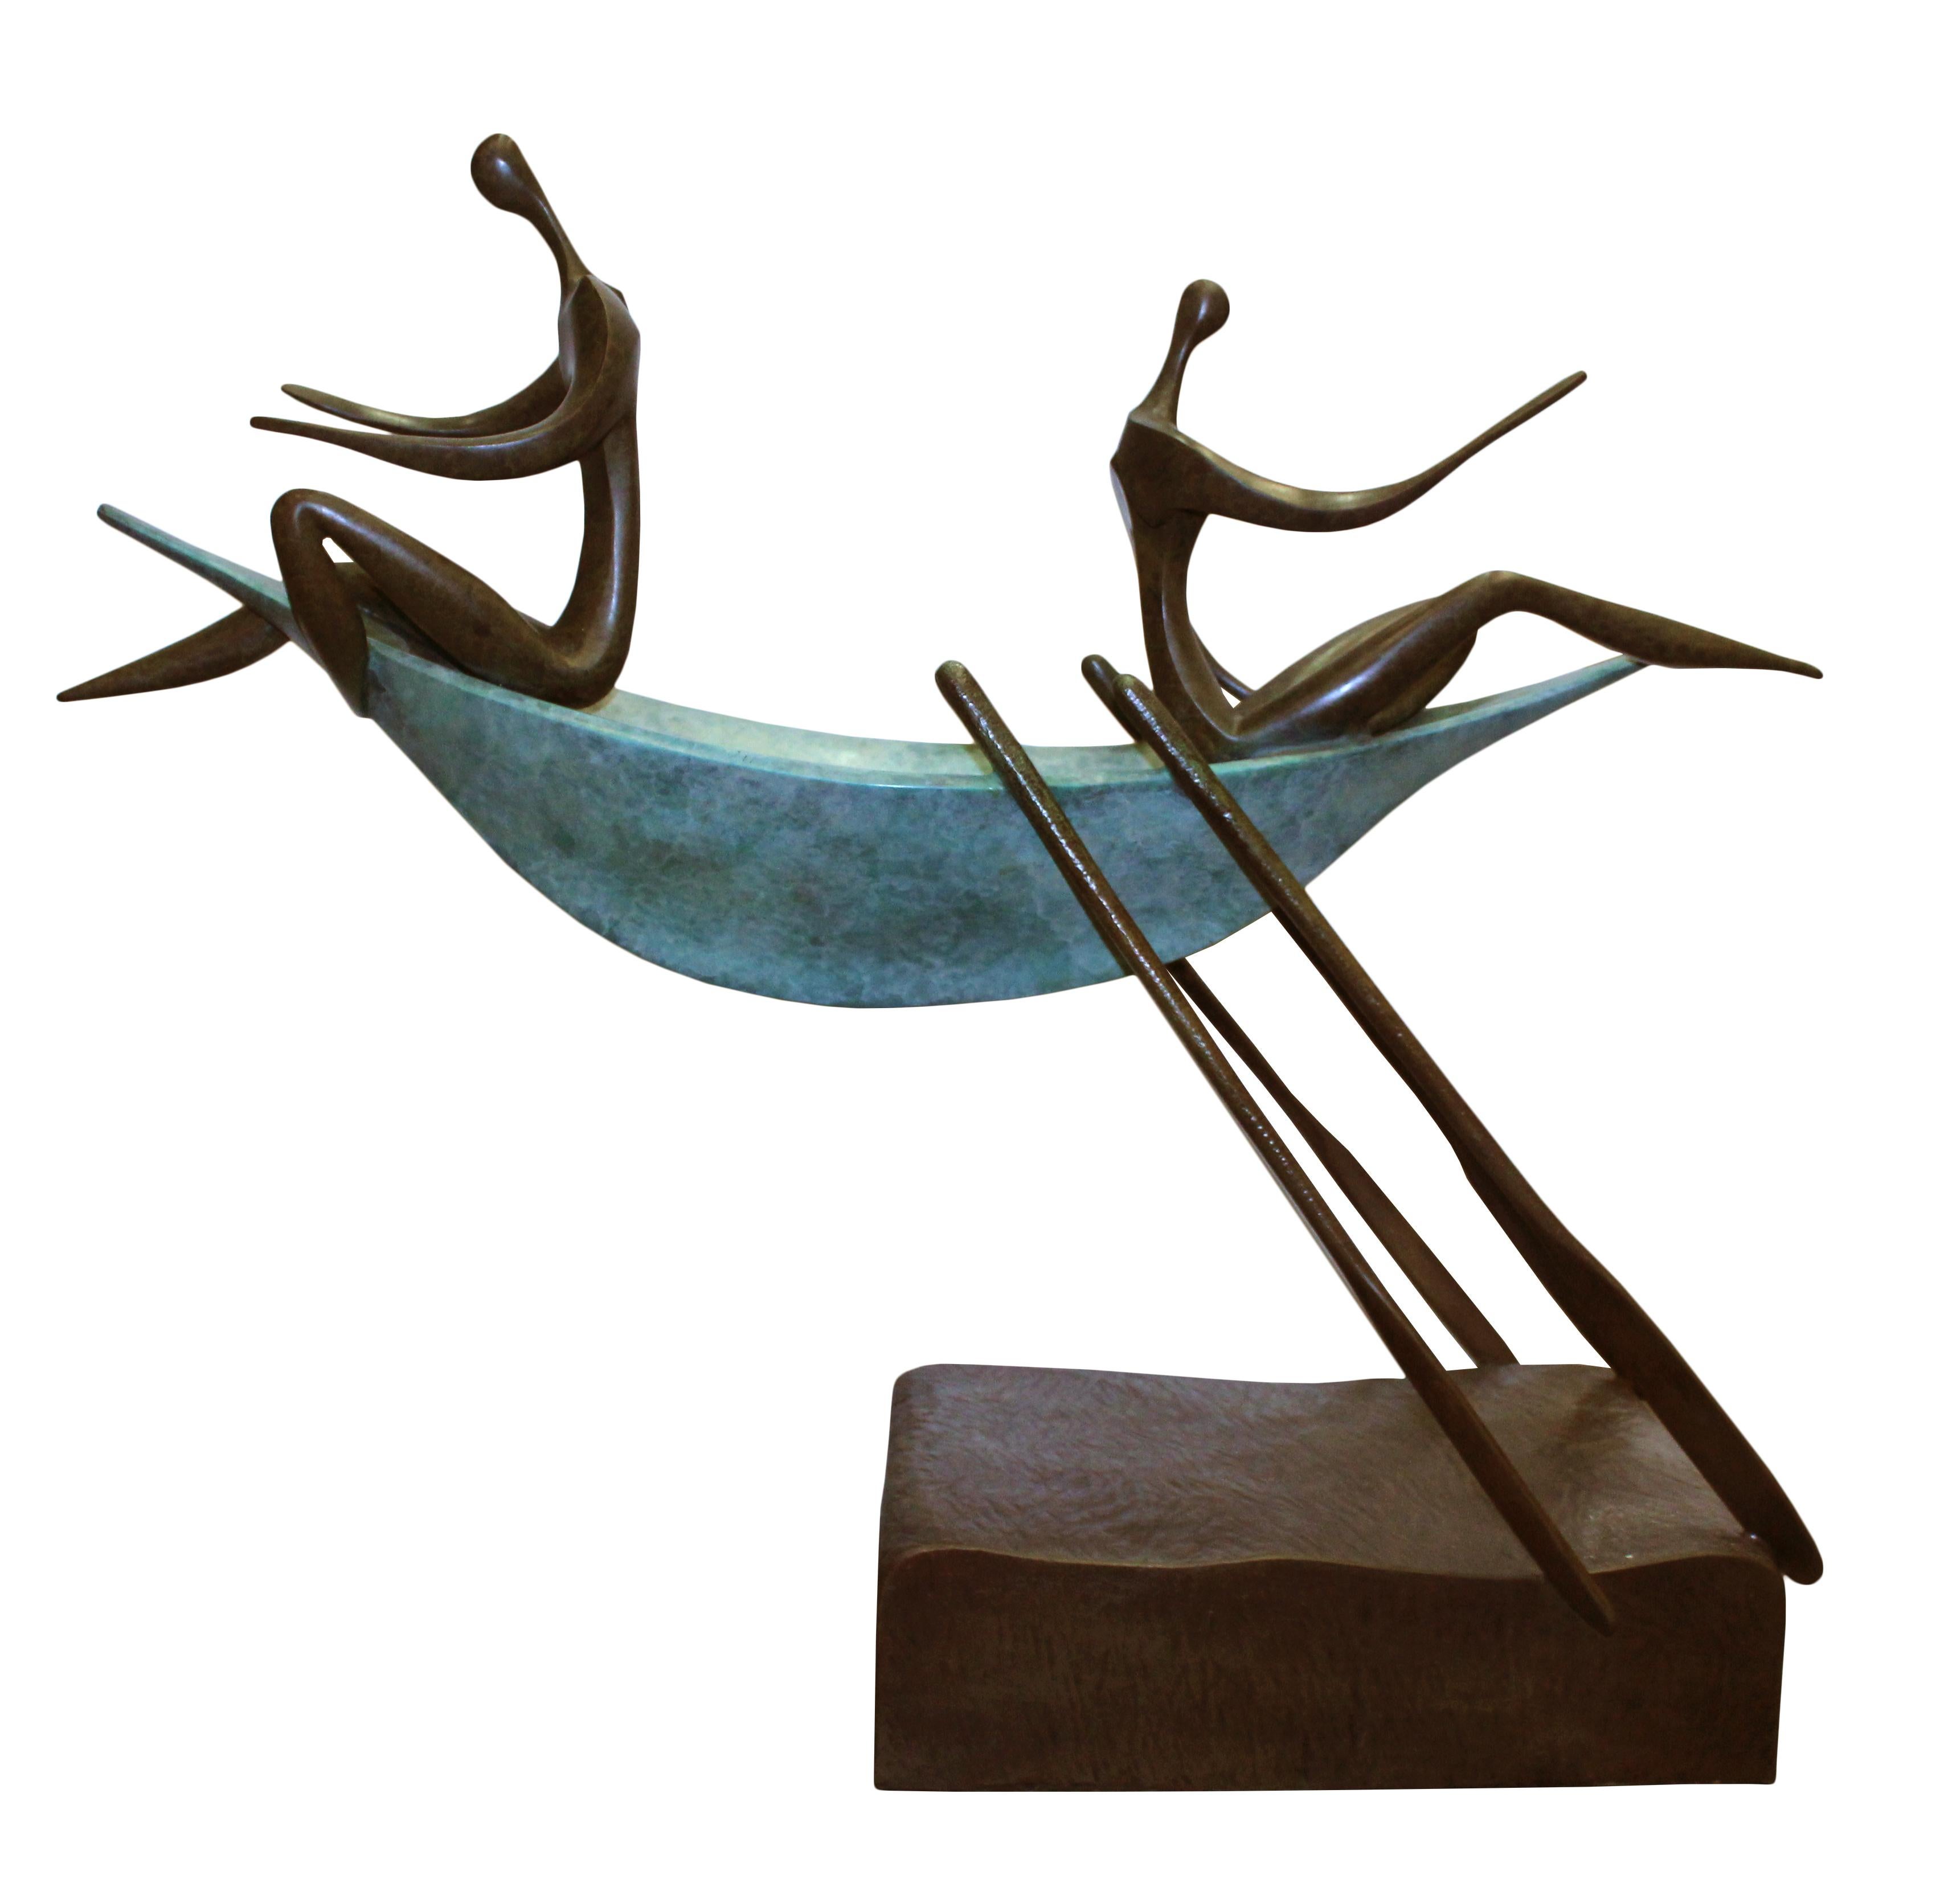 Leon Bronstein Figurative Sculpture - The Opposites Directions, Bronze